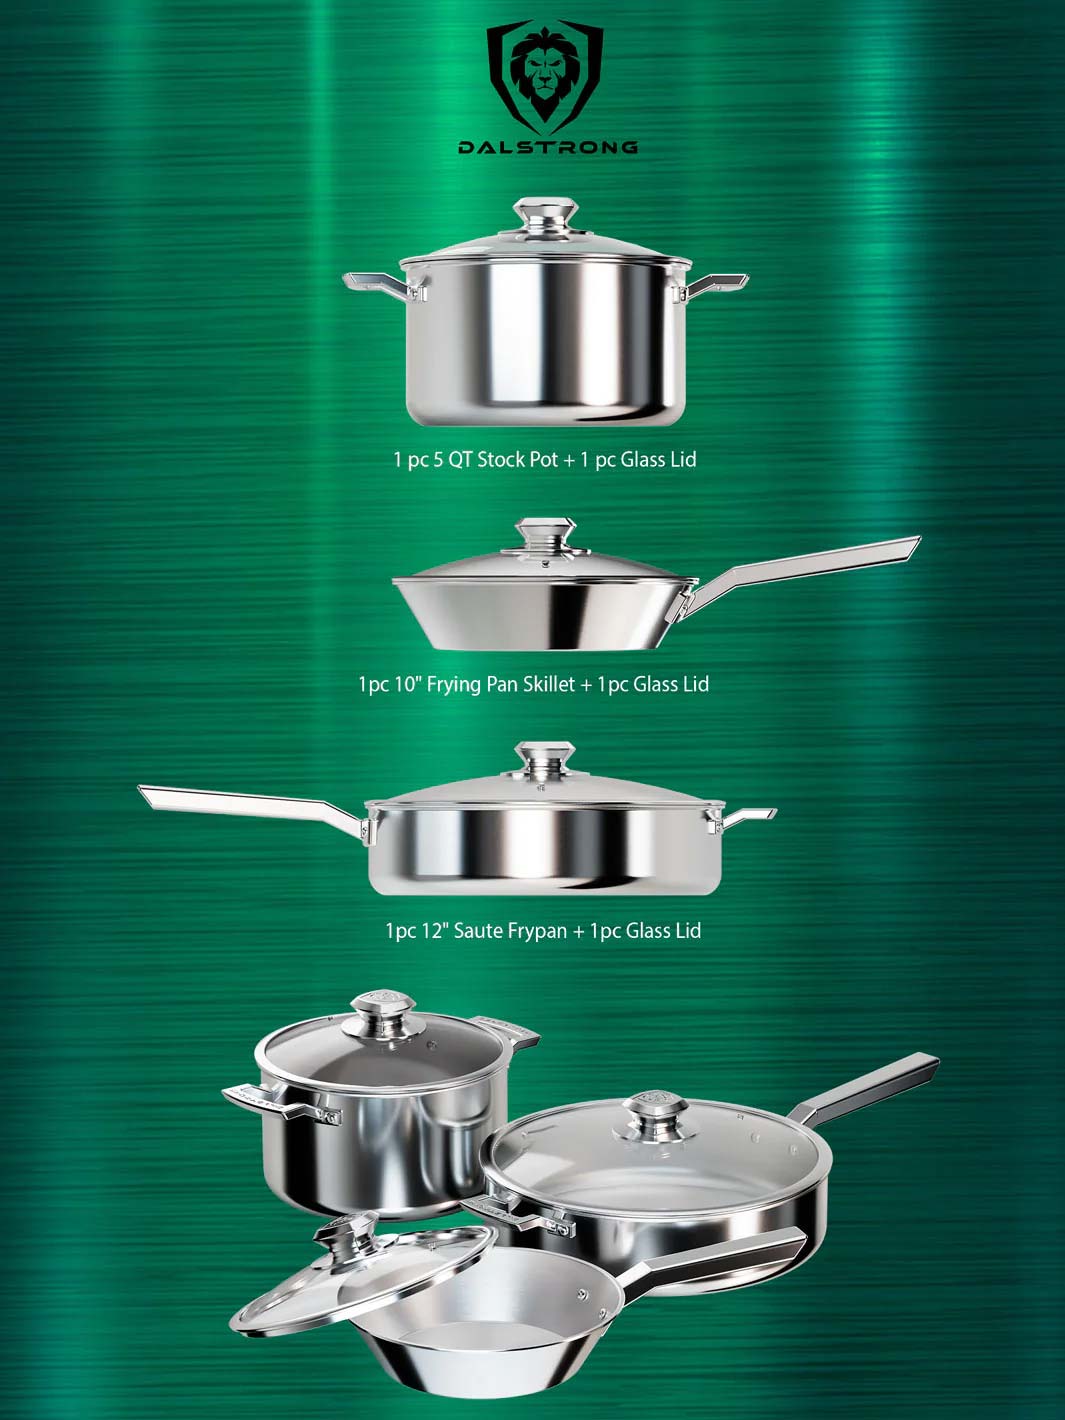 Dalstrong Sauce Pot - 3 Quart - The Oberon Series - 3-Ply Aluminum Core Cookware - Cooking Pot - Stock Pot - Premium Silver P